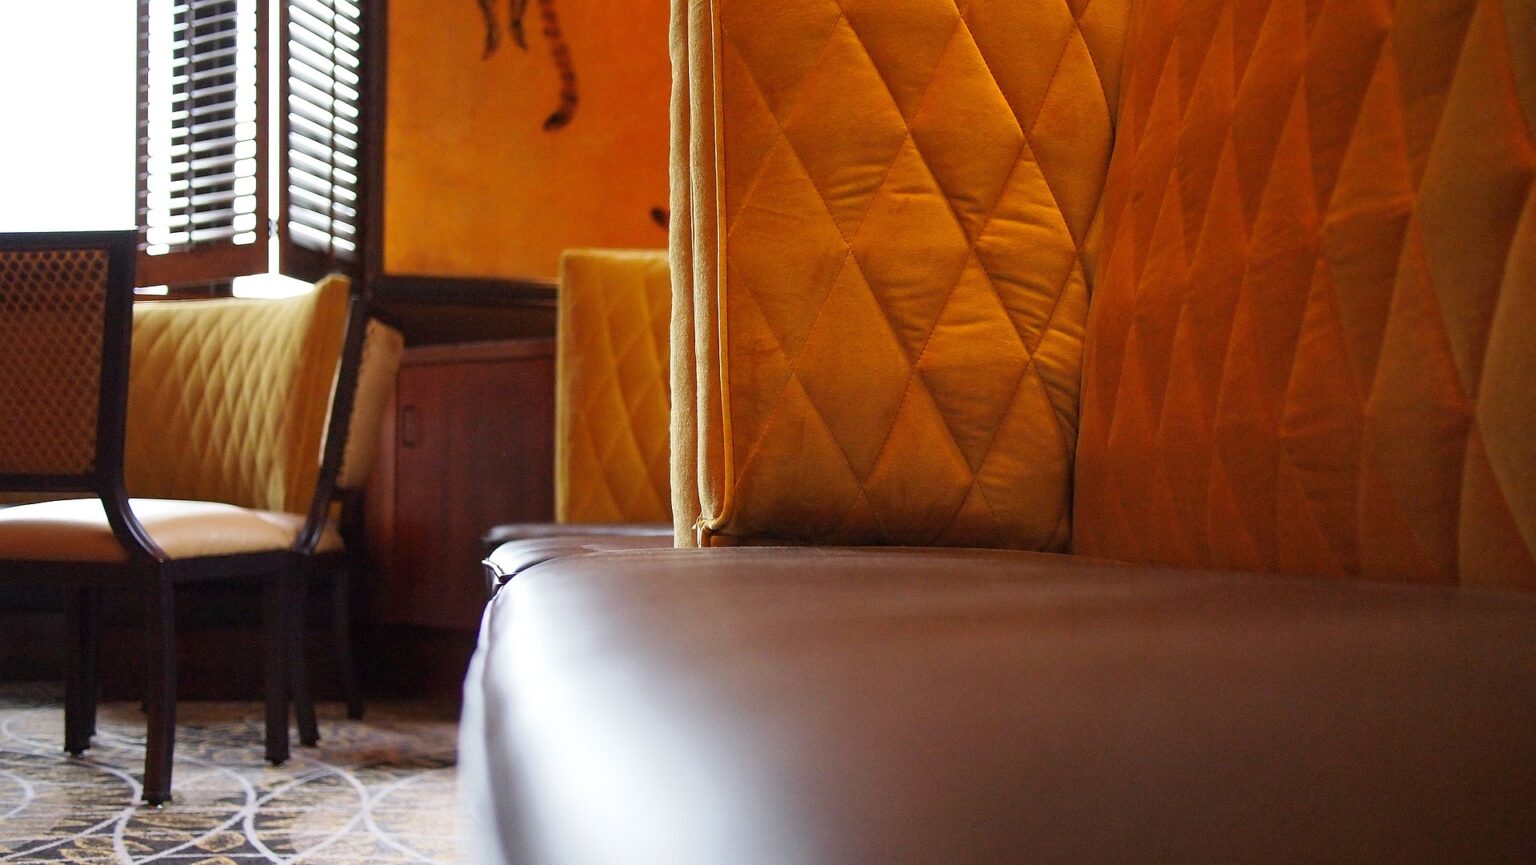 Sofá, cadeirase parede estofada em restaurante. Imagem ilustrativa texto lavar sofá Congonhinhas.